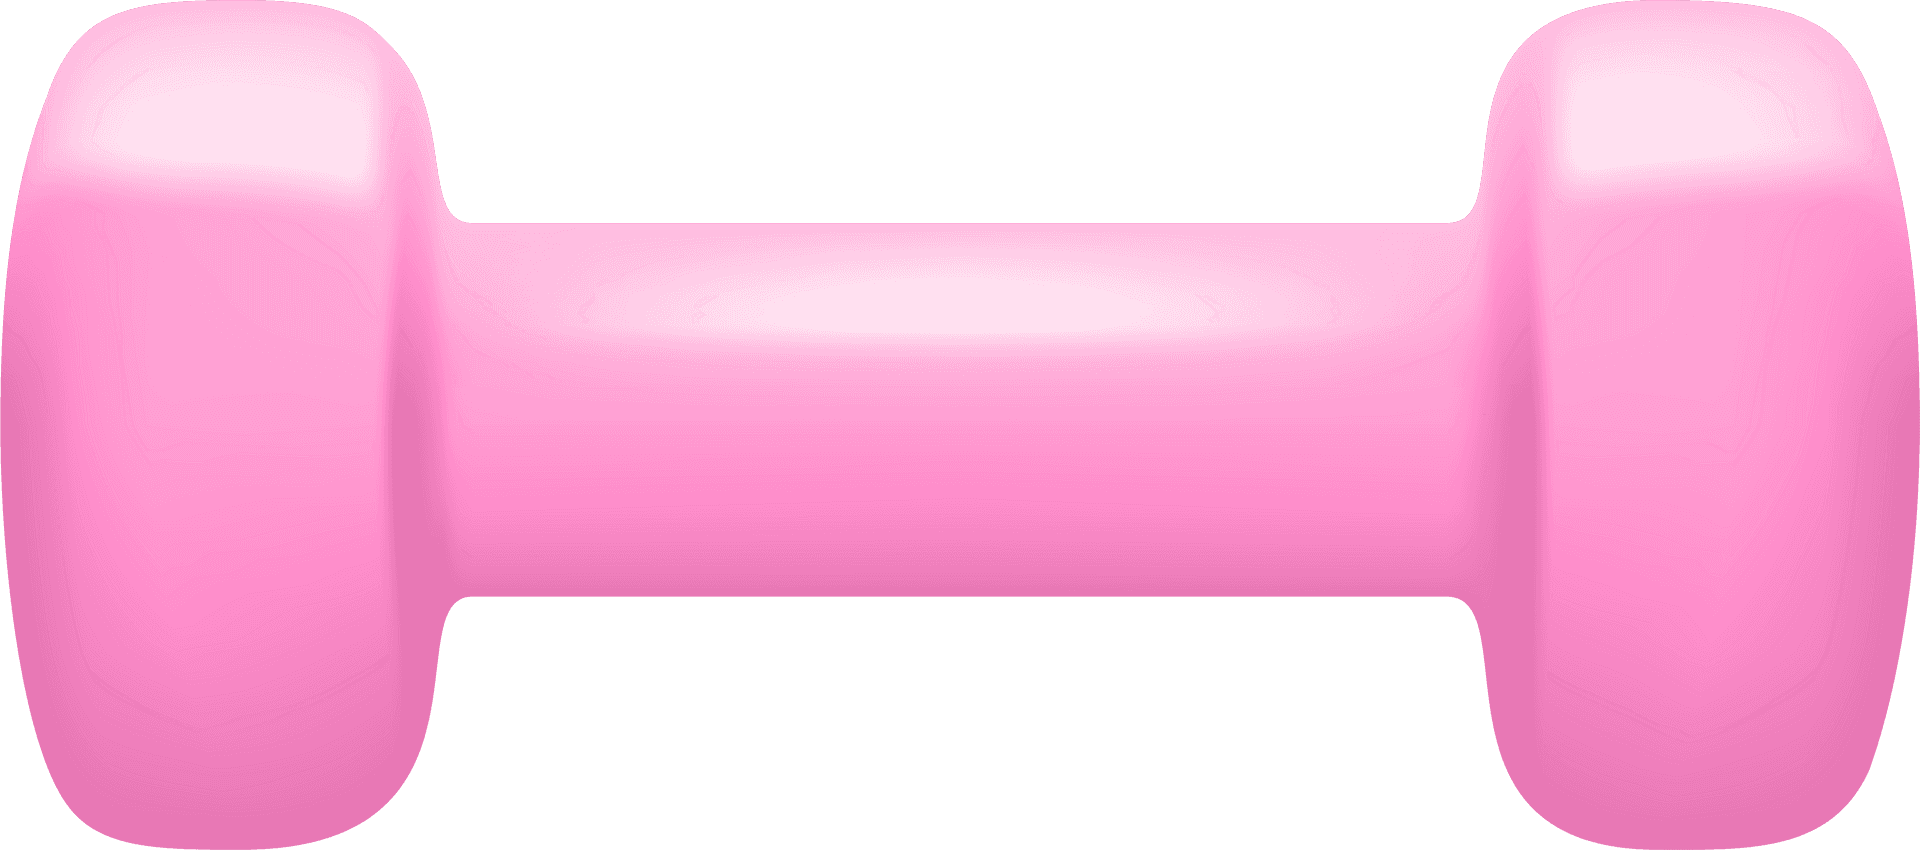 Dumbbells Hd Transparent, Pink Fitness Dumbbell Illustration, Pink